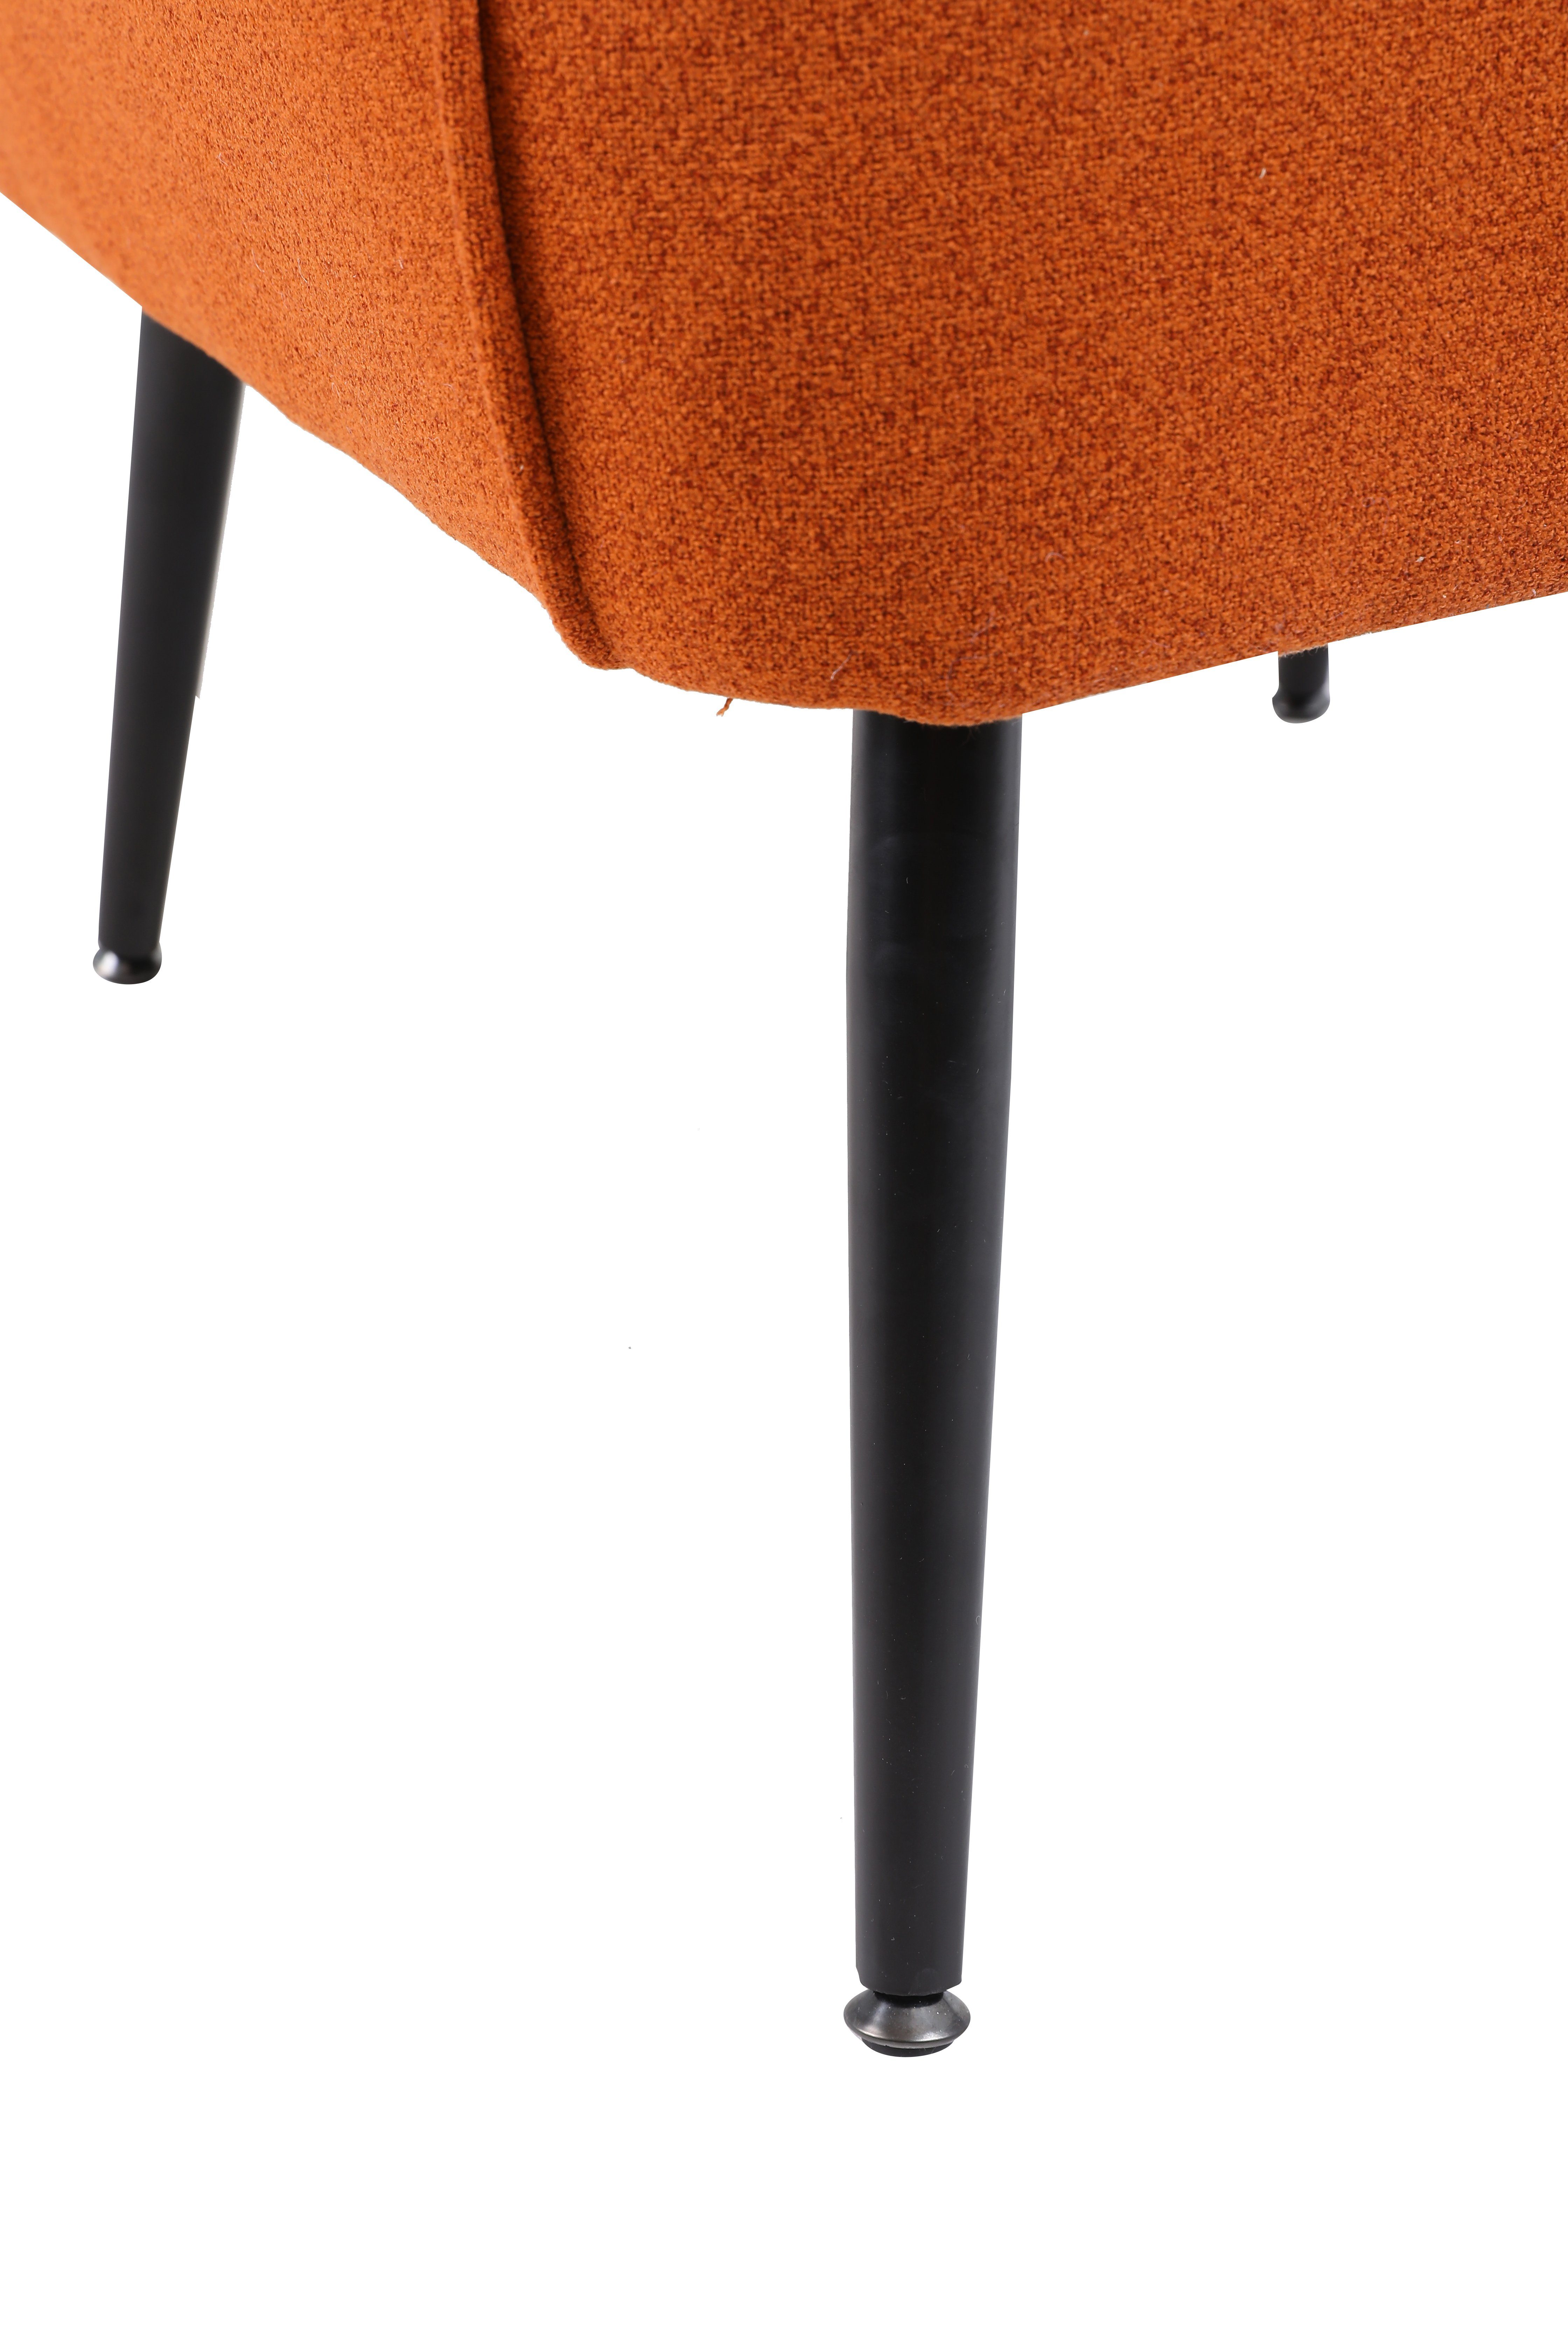 HAUSS SPLOE Loungesessel Ohrensessel Polstersessel Freizeit (Büro Stuhl Kaffee Einzelsofa mit Gepolsterte Fernsehsessel orange Metallbeinen Einzelsofa Stuhl)